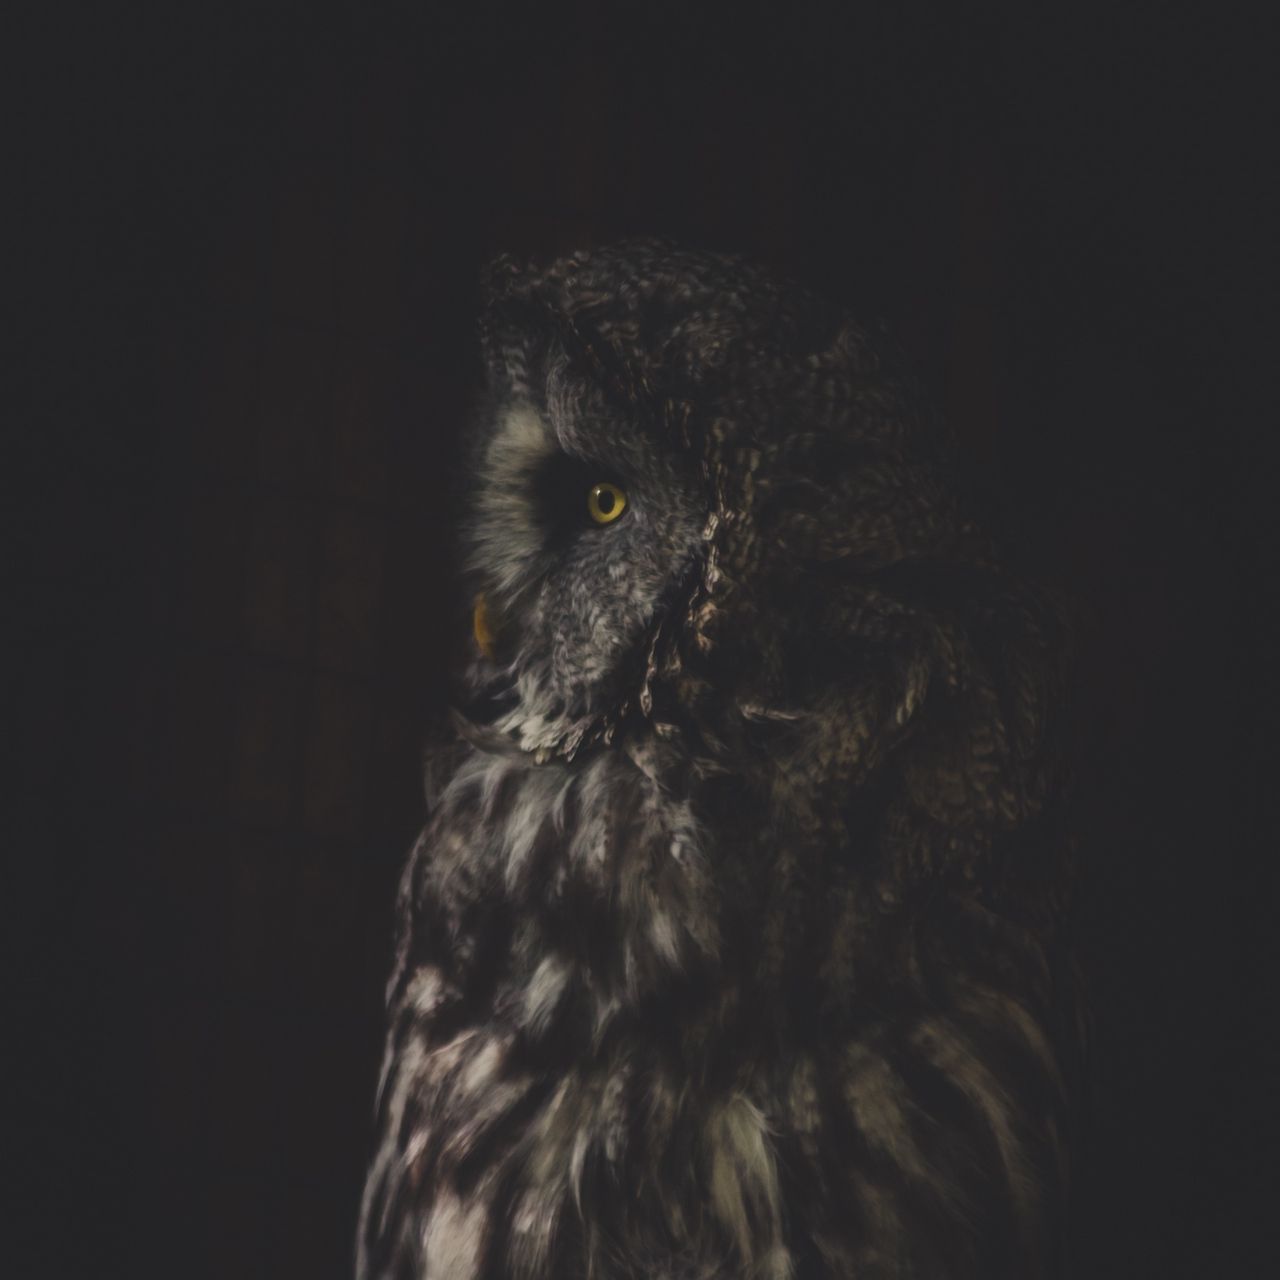 Dark Owl Wallpapers